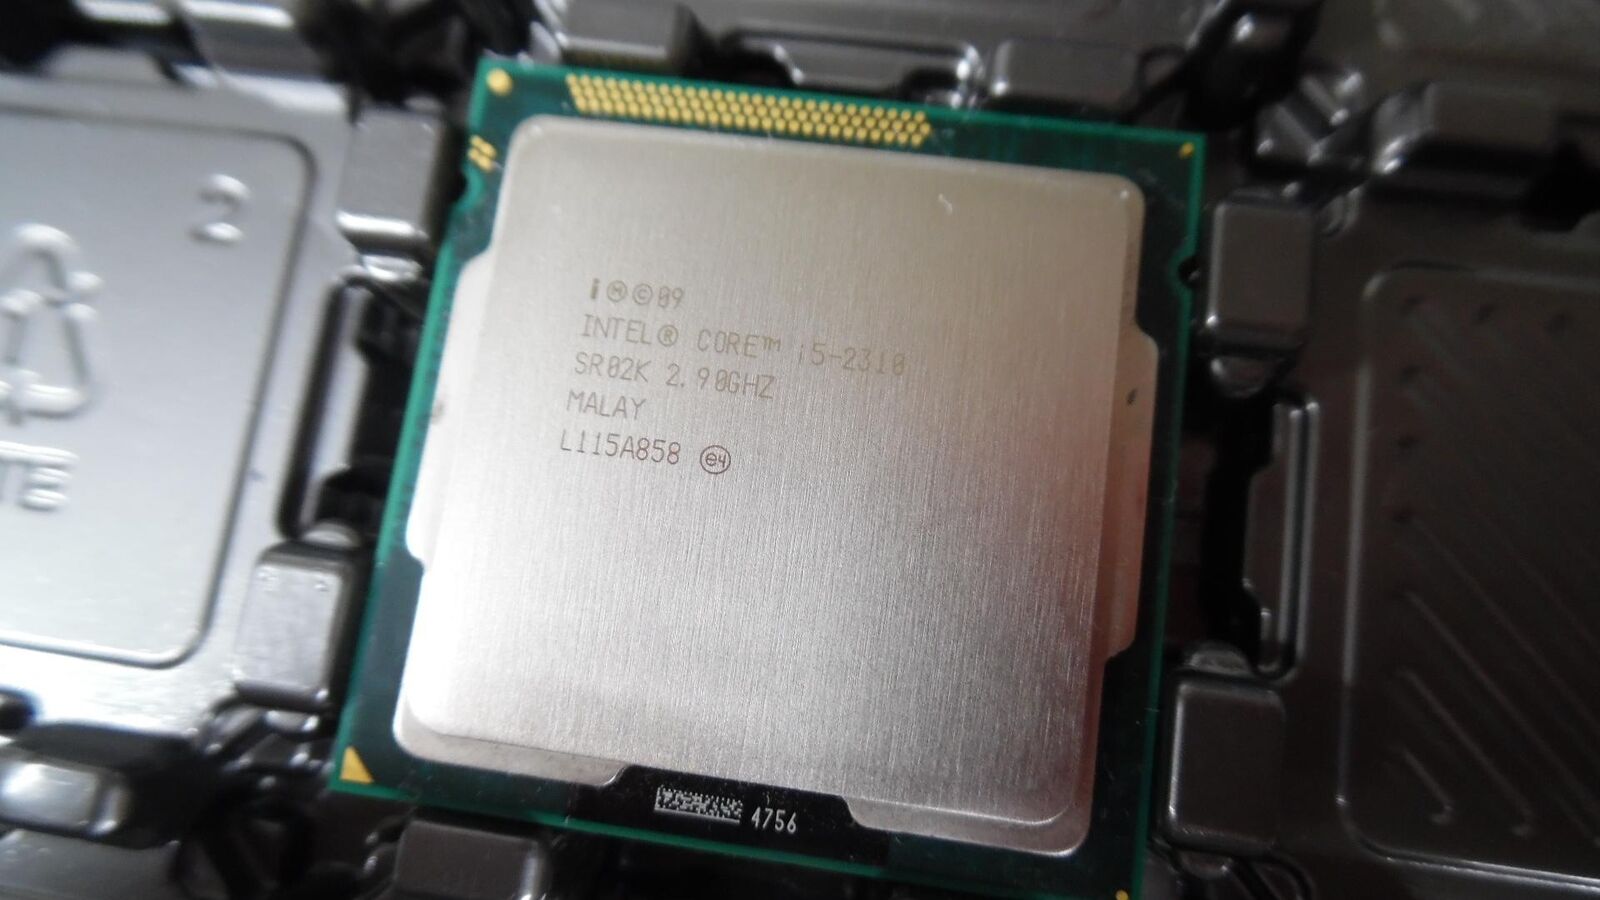 Genuine Intel Core i5-2310 2.90GHz Quad-Core (SR02K) Processor